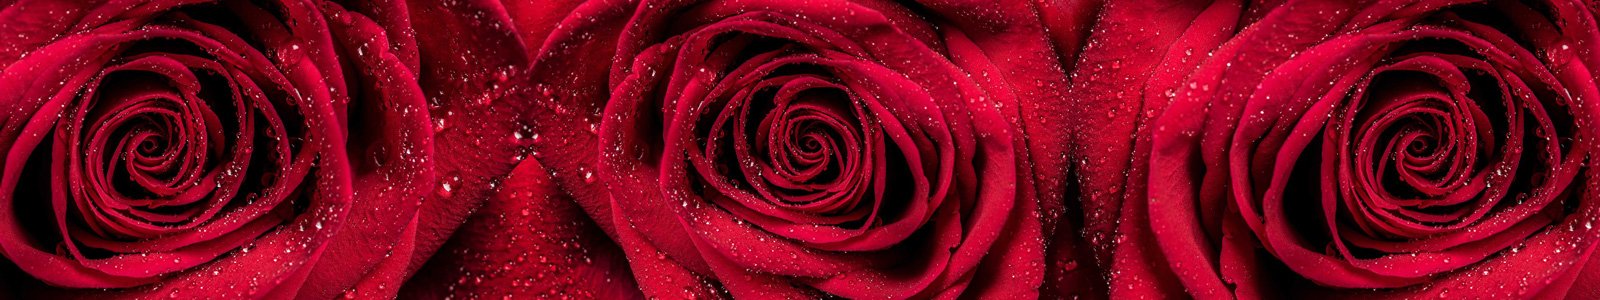 №7355 - Красные розы с каплями росы